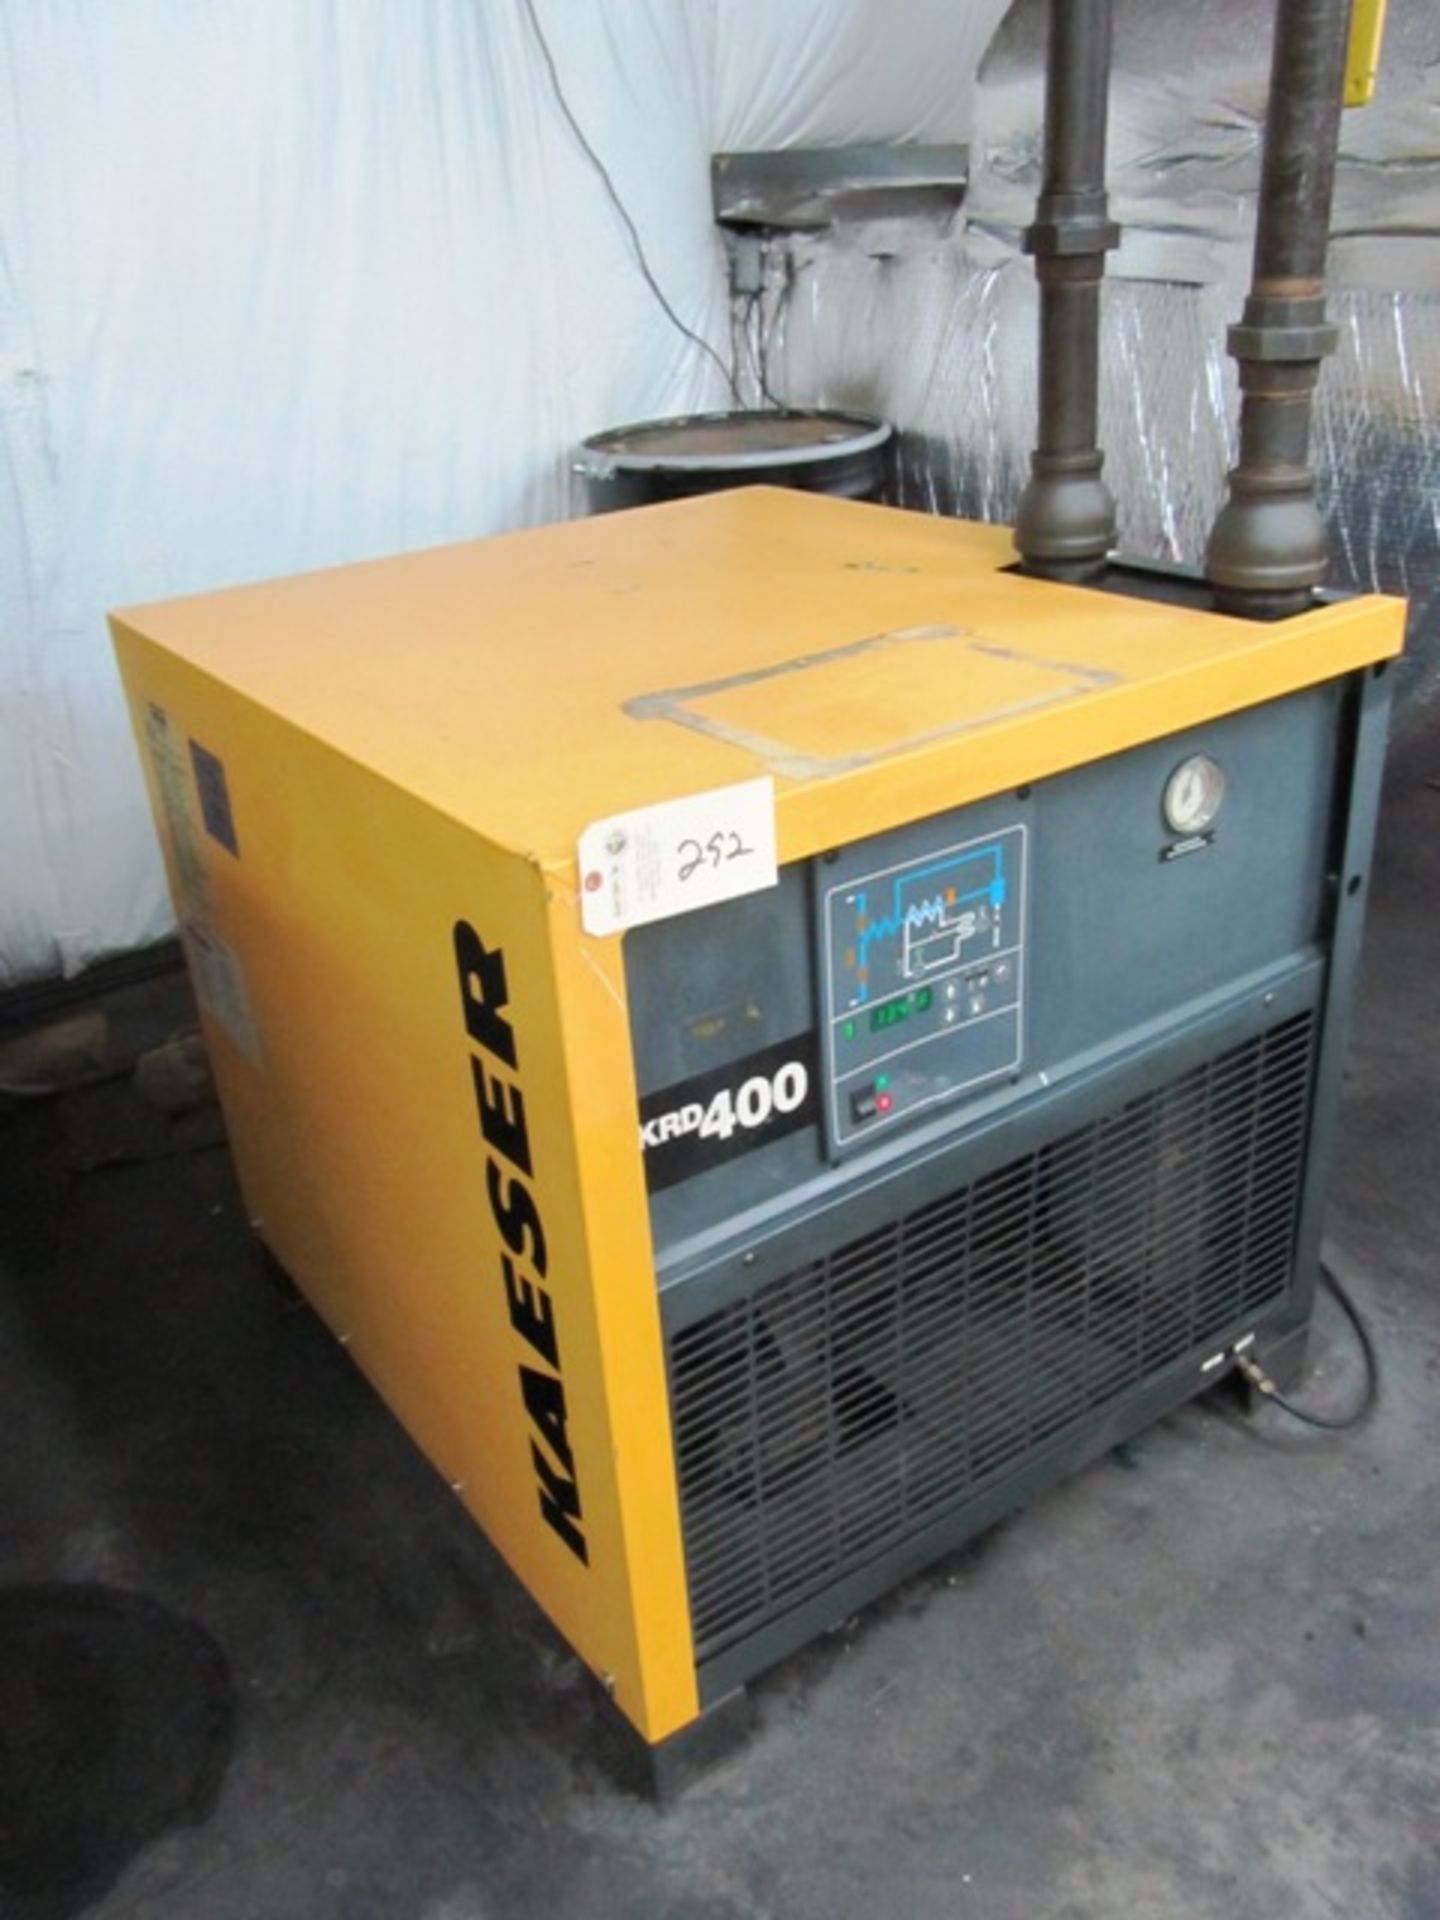 Kaeser Model KRD400 Air Dryer with 400 SCFM, 200 PSIG, sn:0363-2T.9606-30K